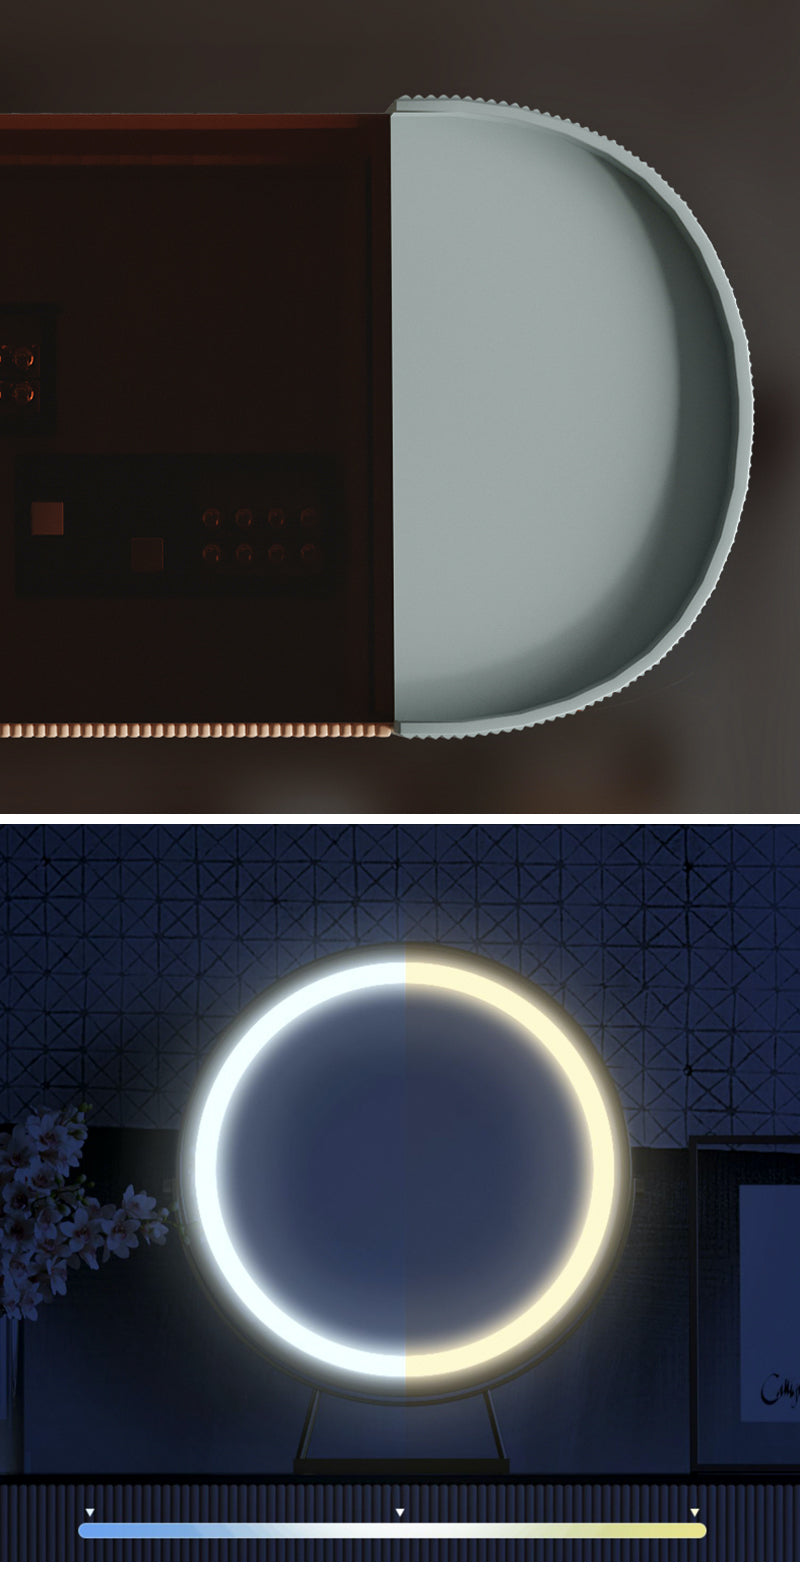 【ドレッサー】モランディ色ラグジュアリー テーブル LEDミラー ☆100日間返品交換保証制度